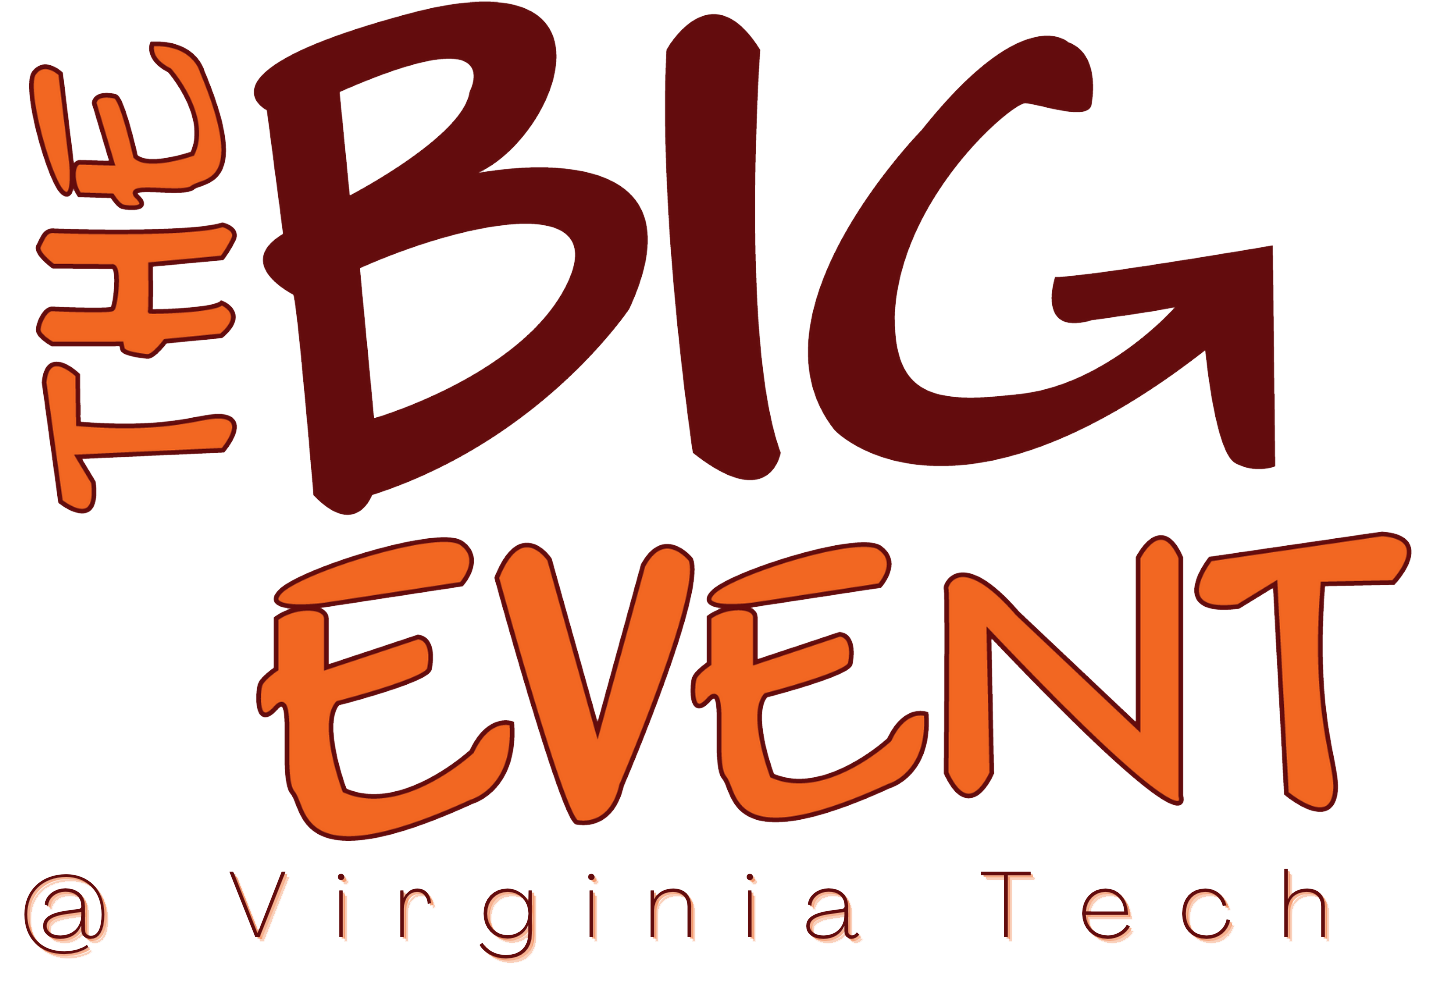 "The Big Event" logo